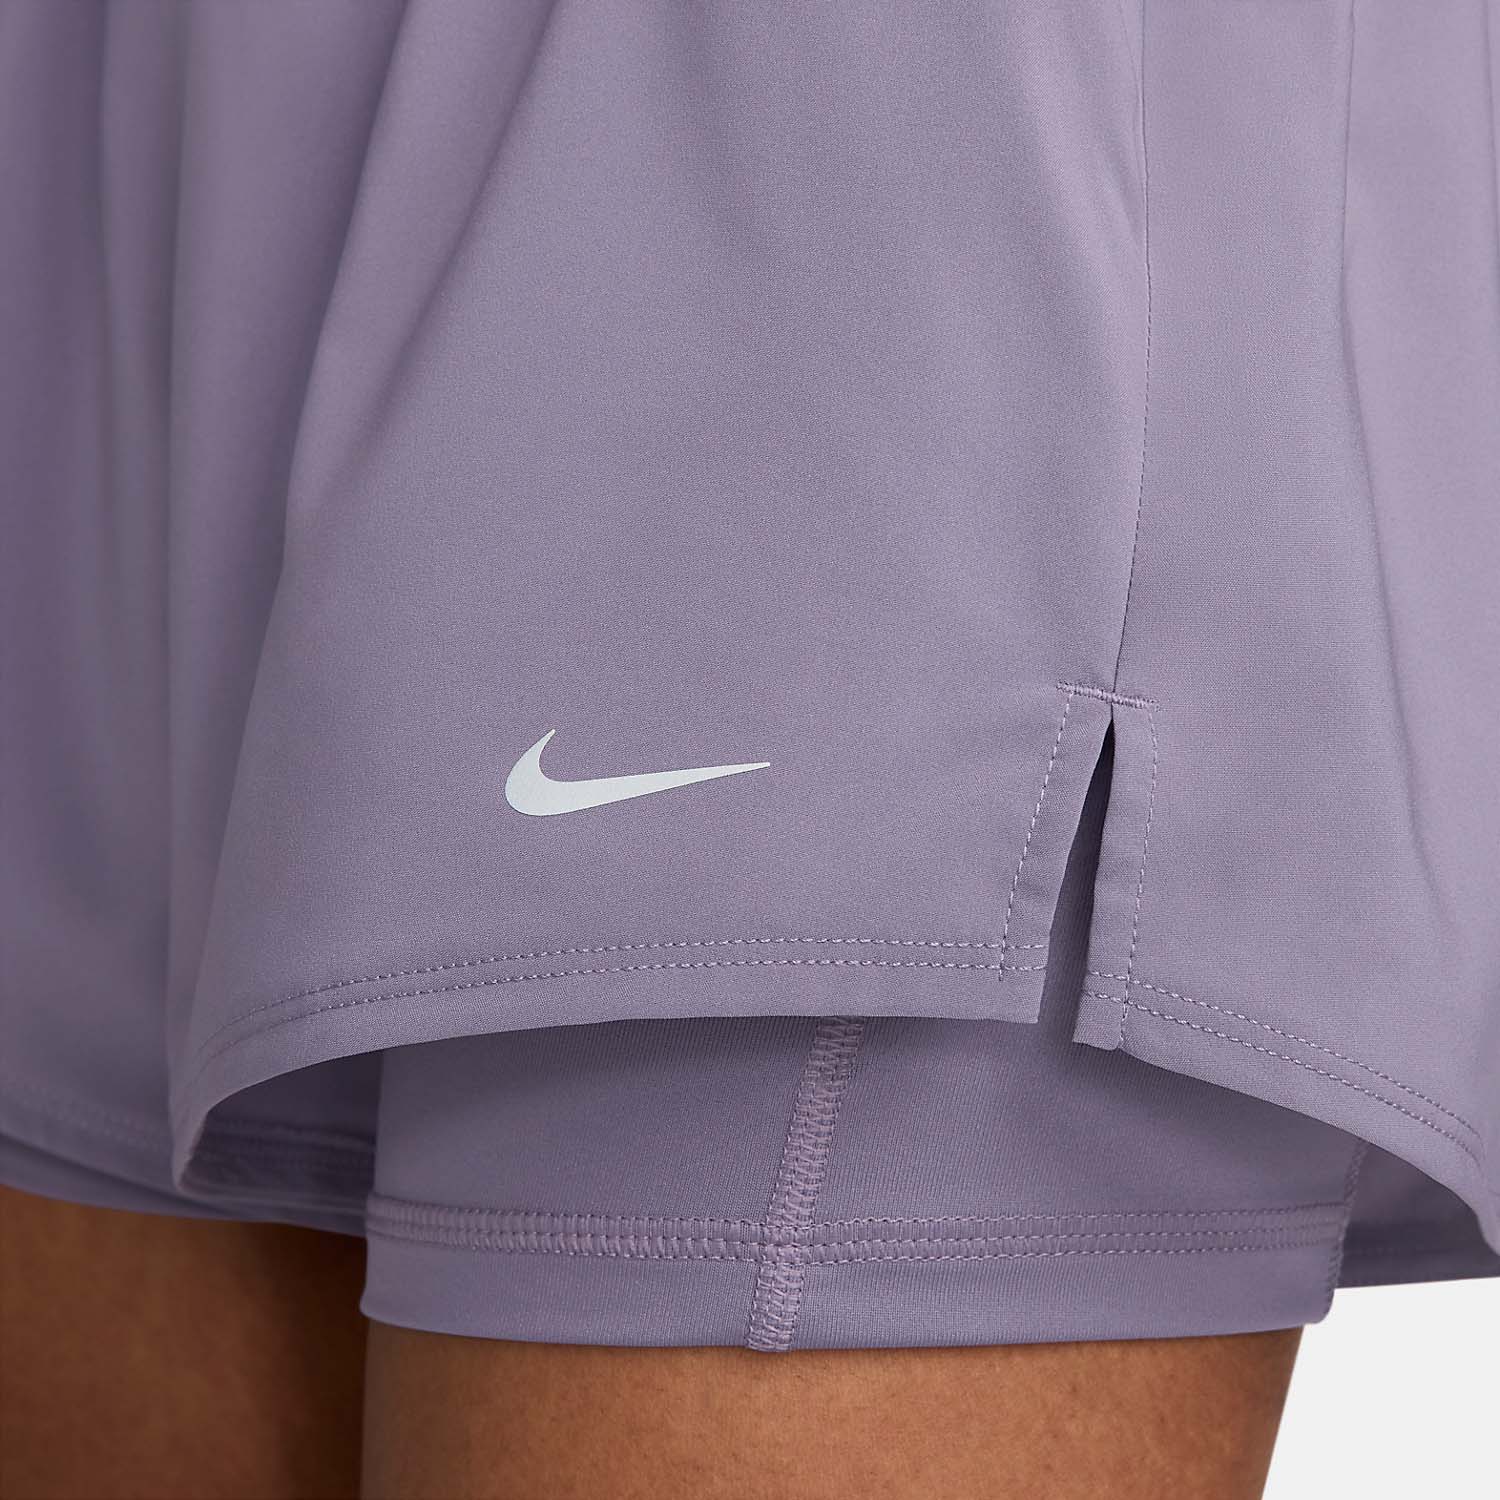 Nike One 2 in 1 3in Pantaloncini - Daybreak/Reflective Silver